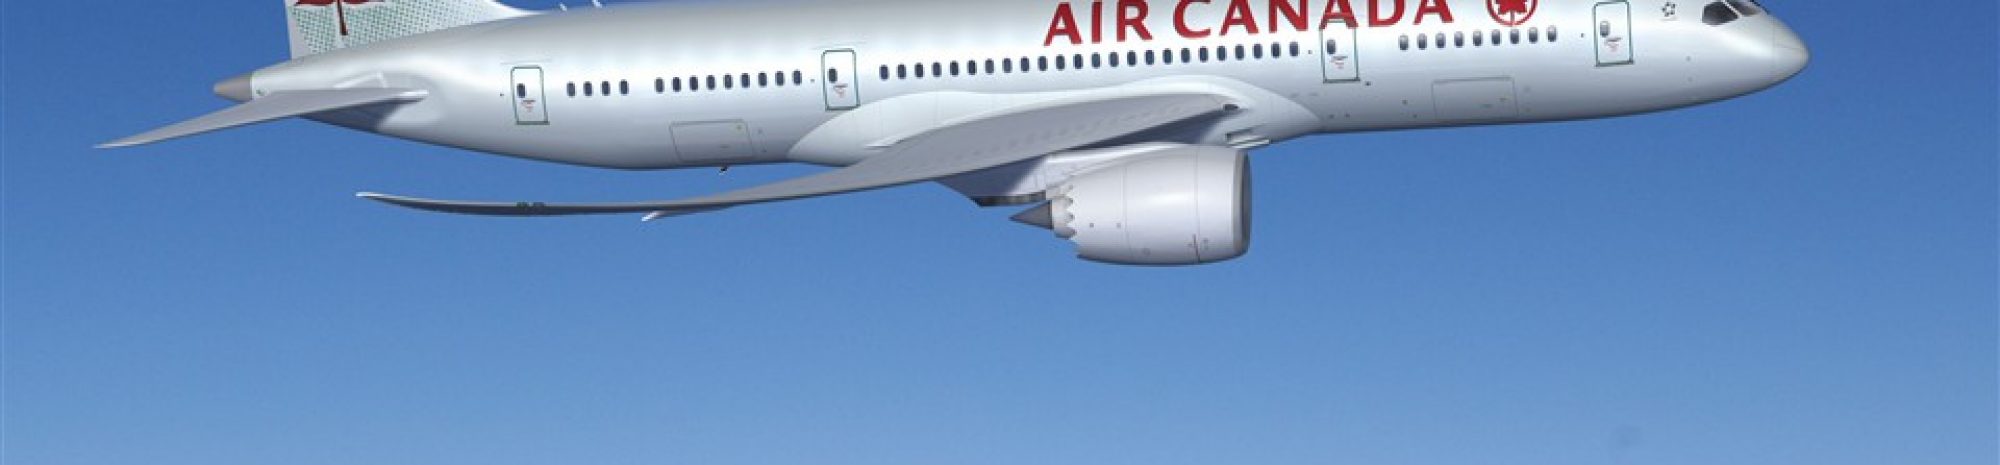 Rajustement d’horaire chez Air Canada suite à l’immobilisation au sol des appareils 737 MAX de Boeing